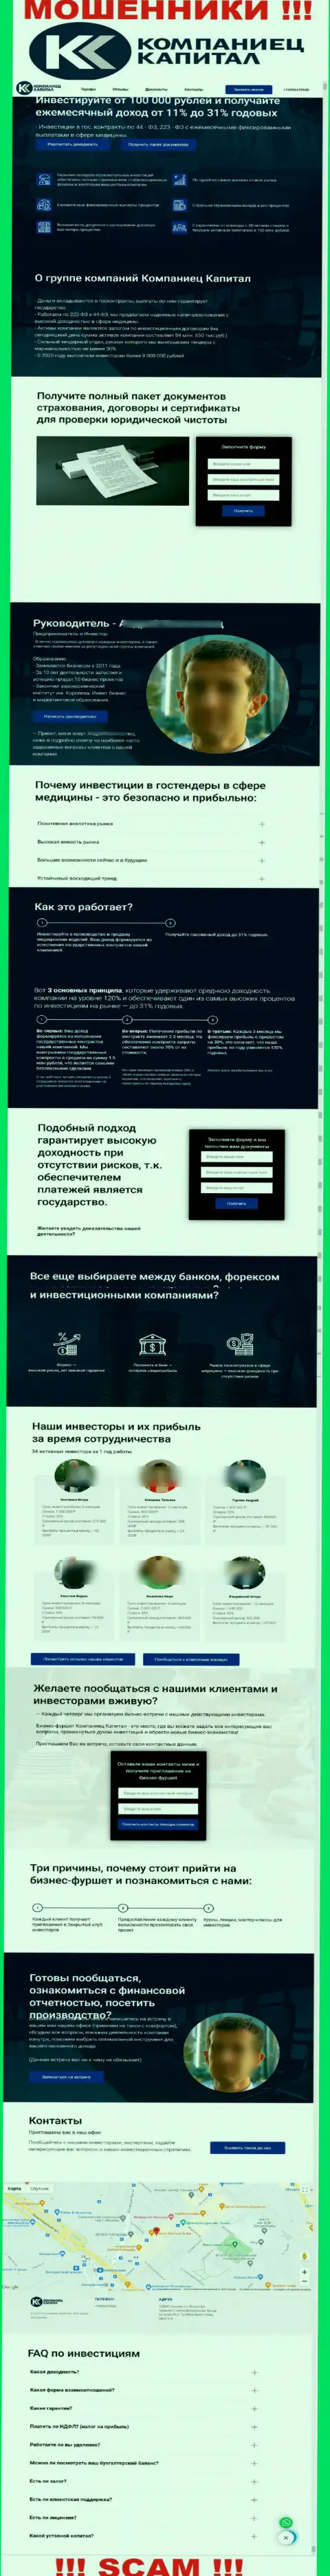 Если же не желаете оказаться пострадавшими от мошеннических действий Компаниец-Капитал, то тогда будет лучше на Kompaniets-Capital Ru не заходить